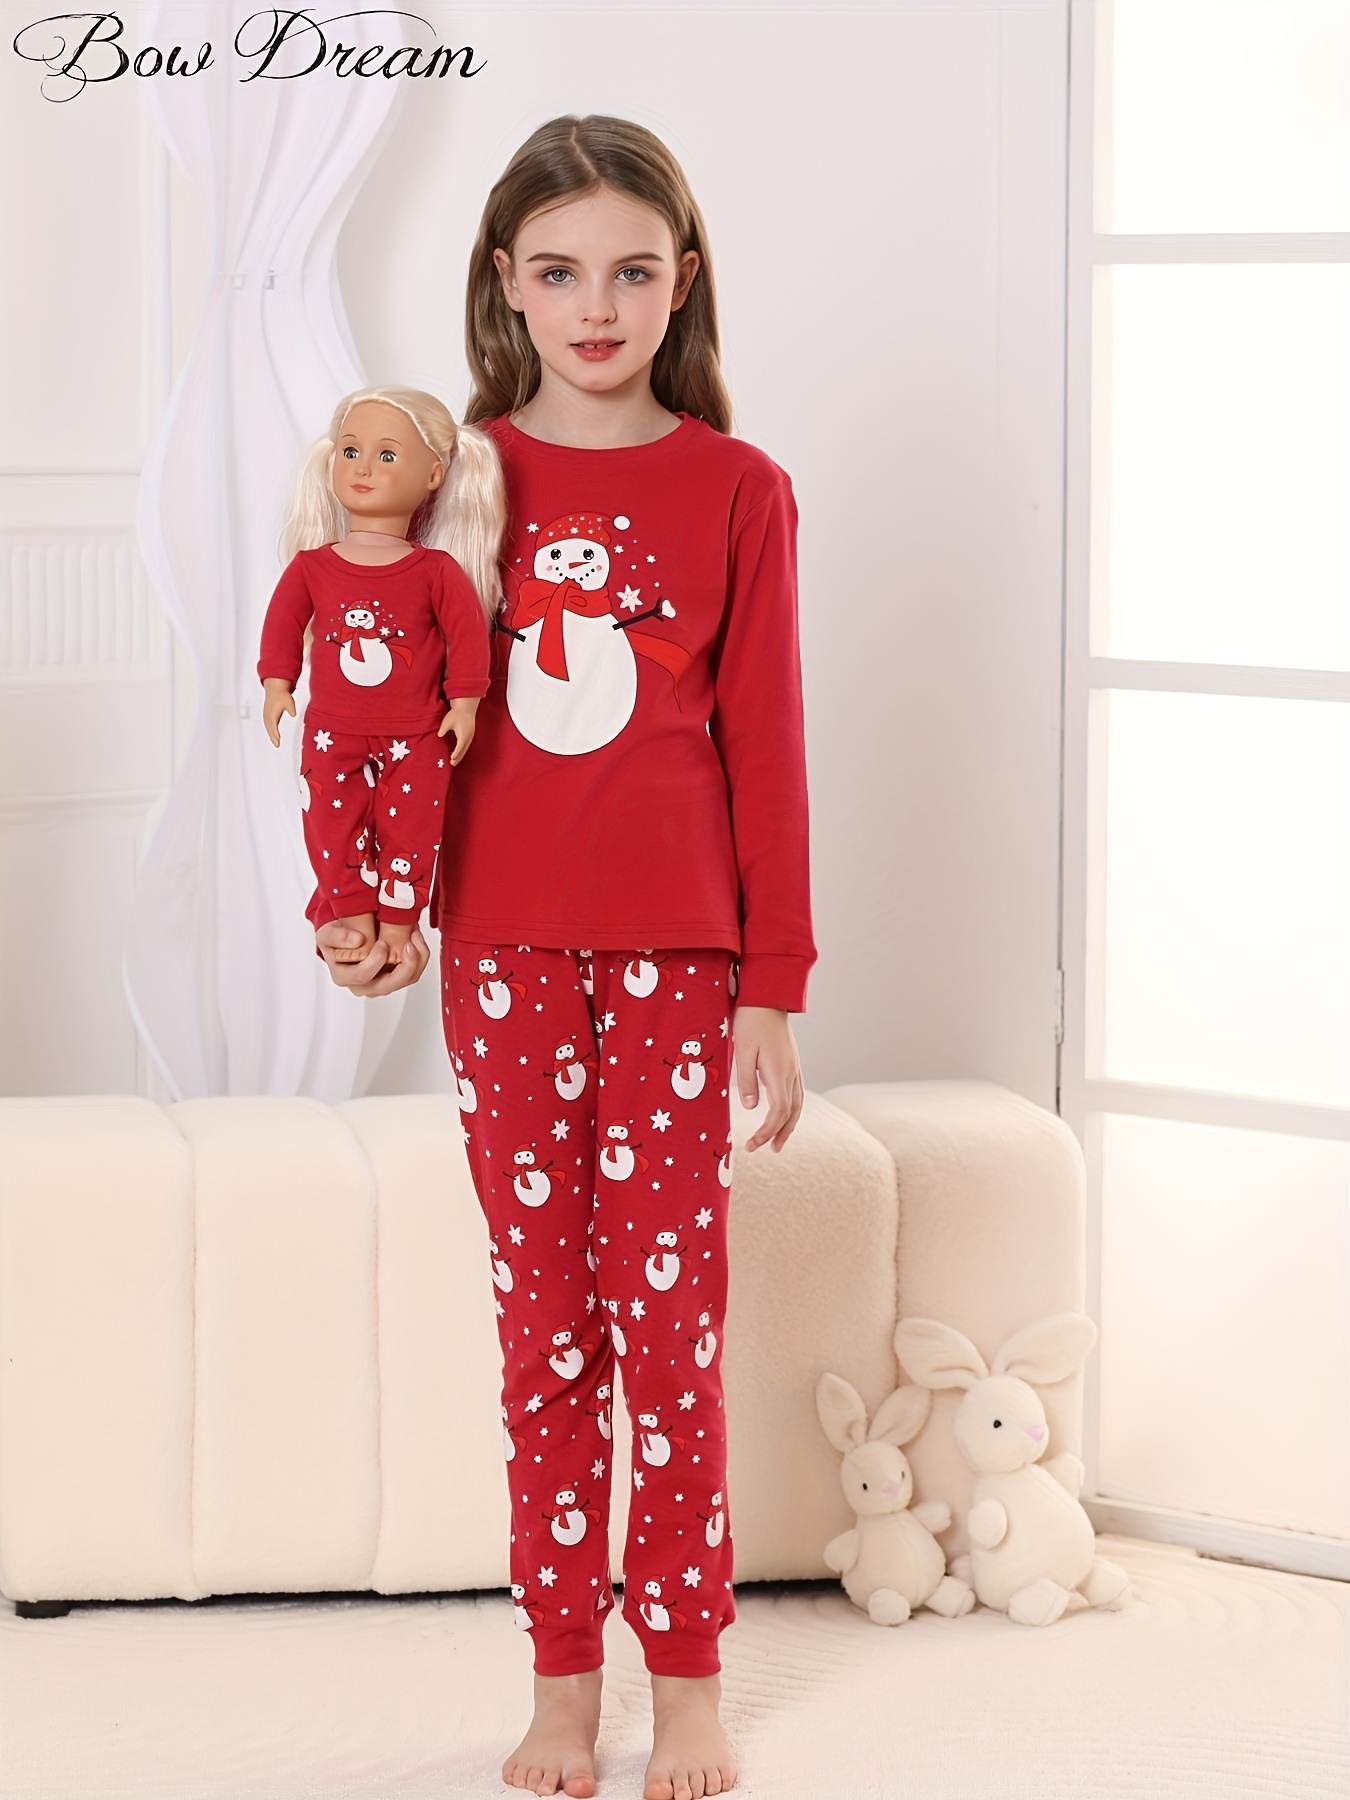 Matching Girl & Doll Unicorn Cotton Pajamas